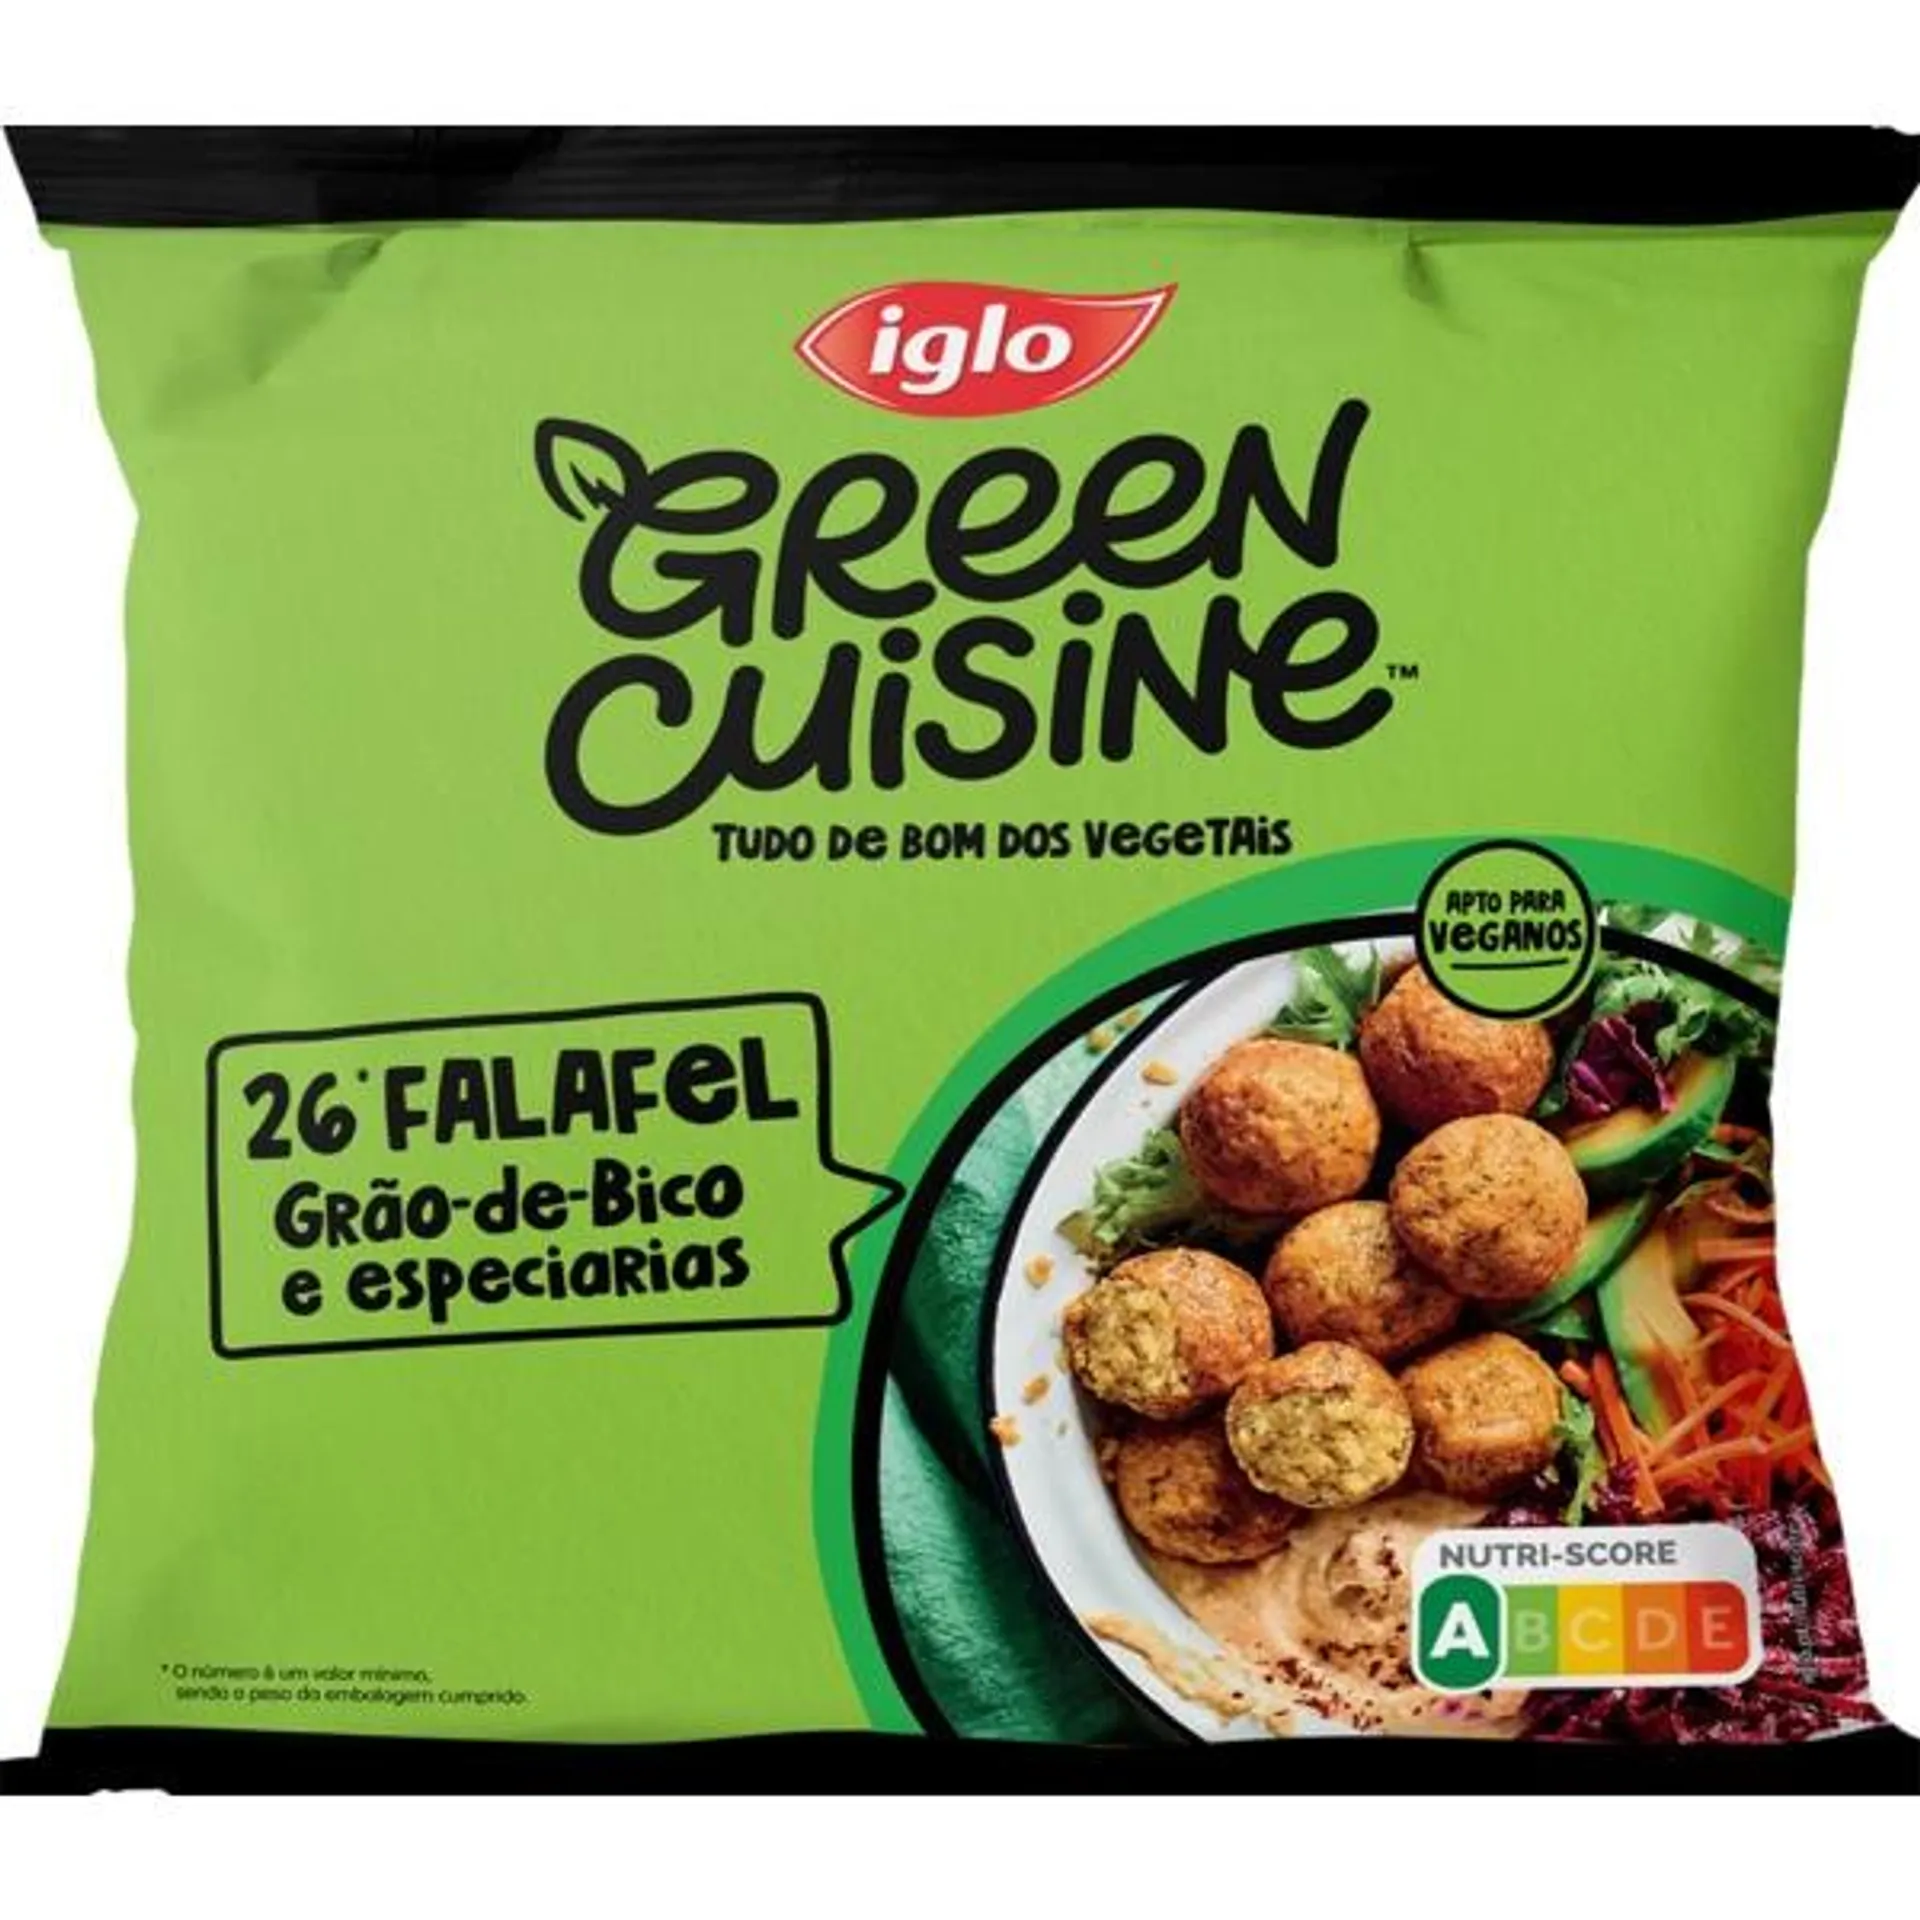 Falafel Grão de Bico e Especiarias 26 Unidades Vegan embalagem 450 g Iglo Green Cuisine